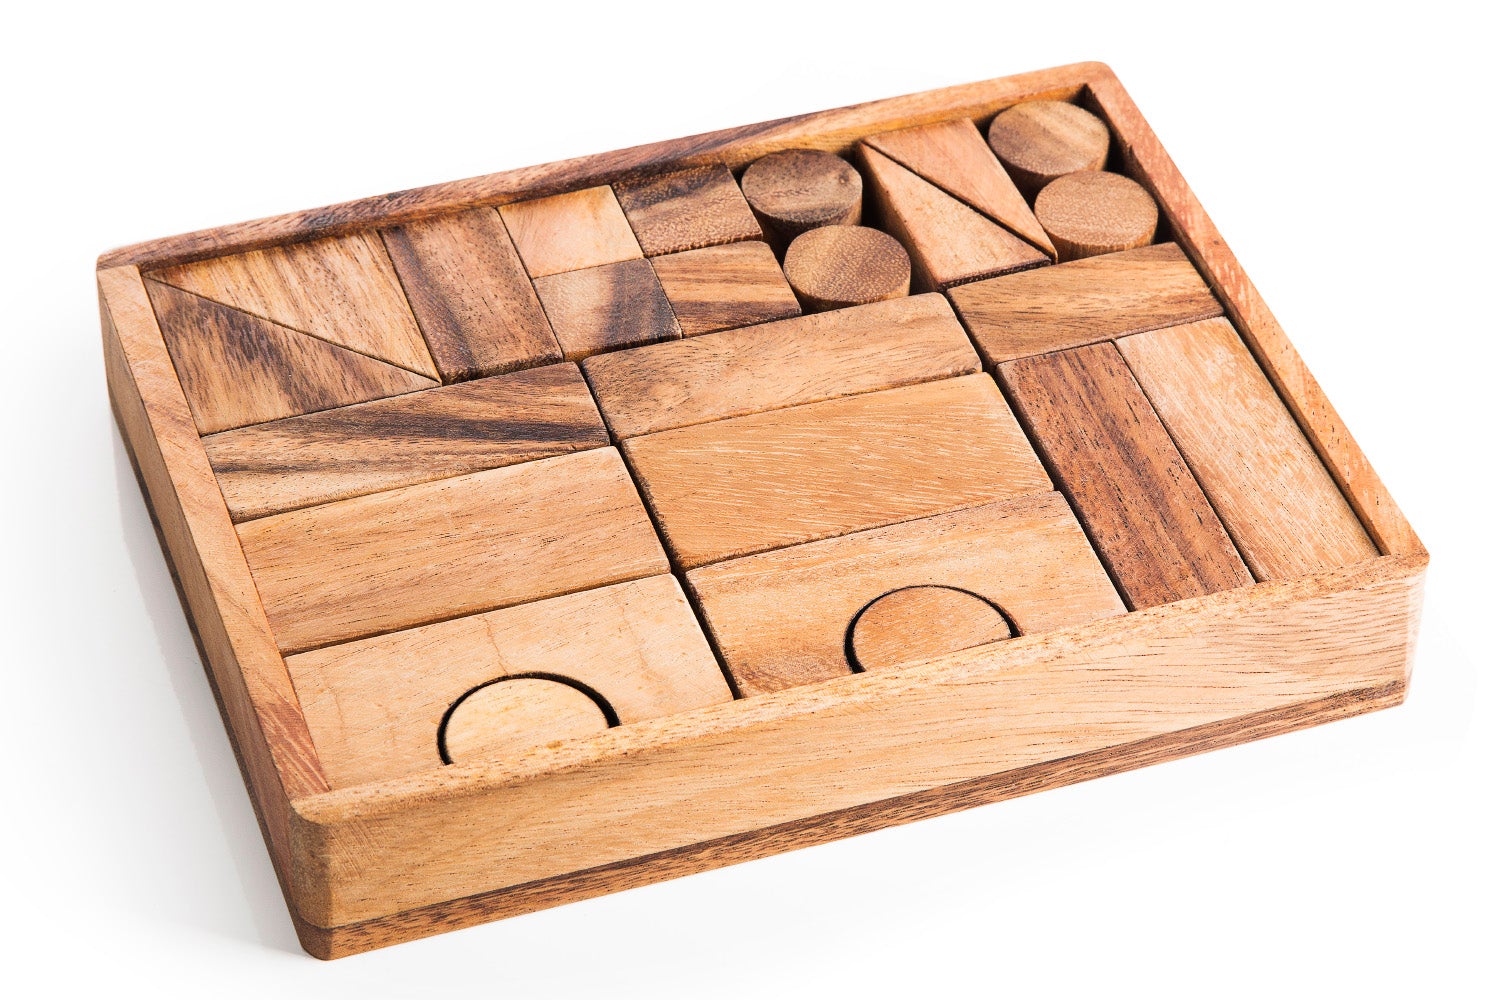 Natural Wooden Play Blocks